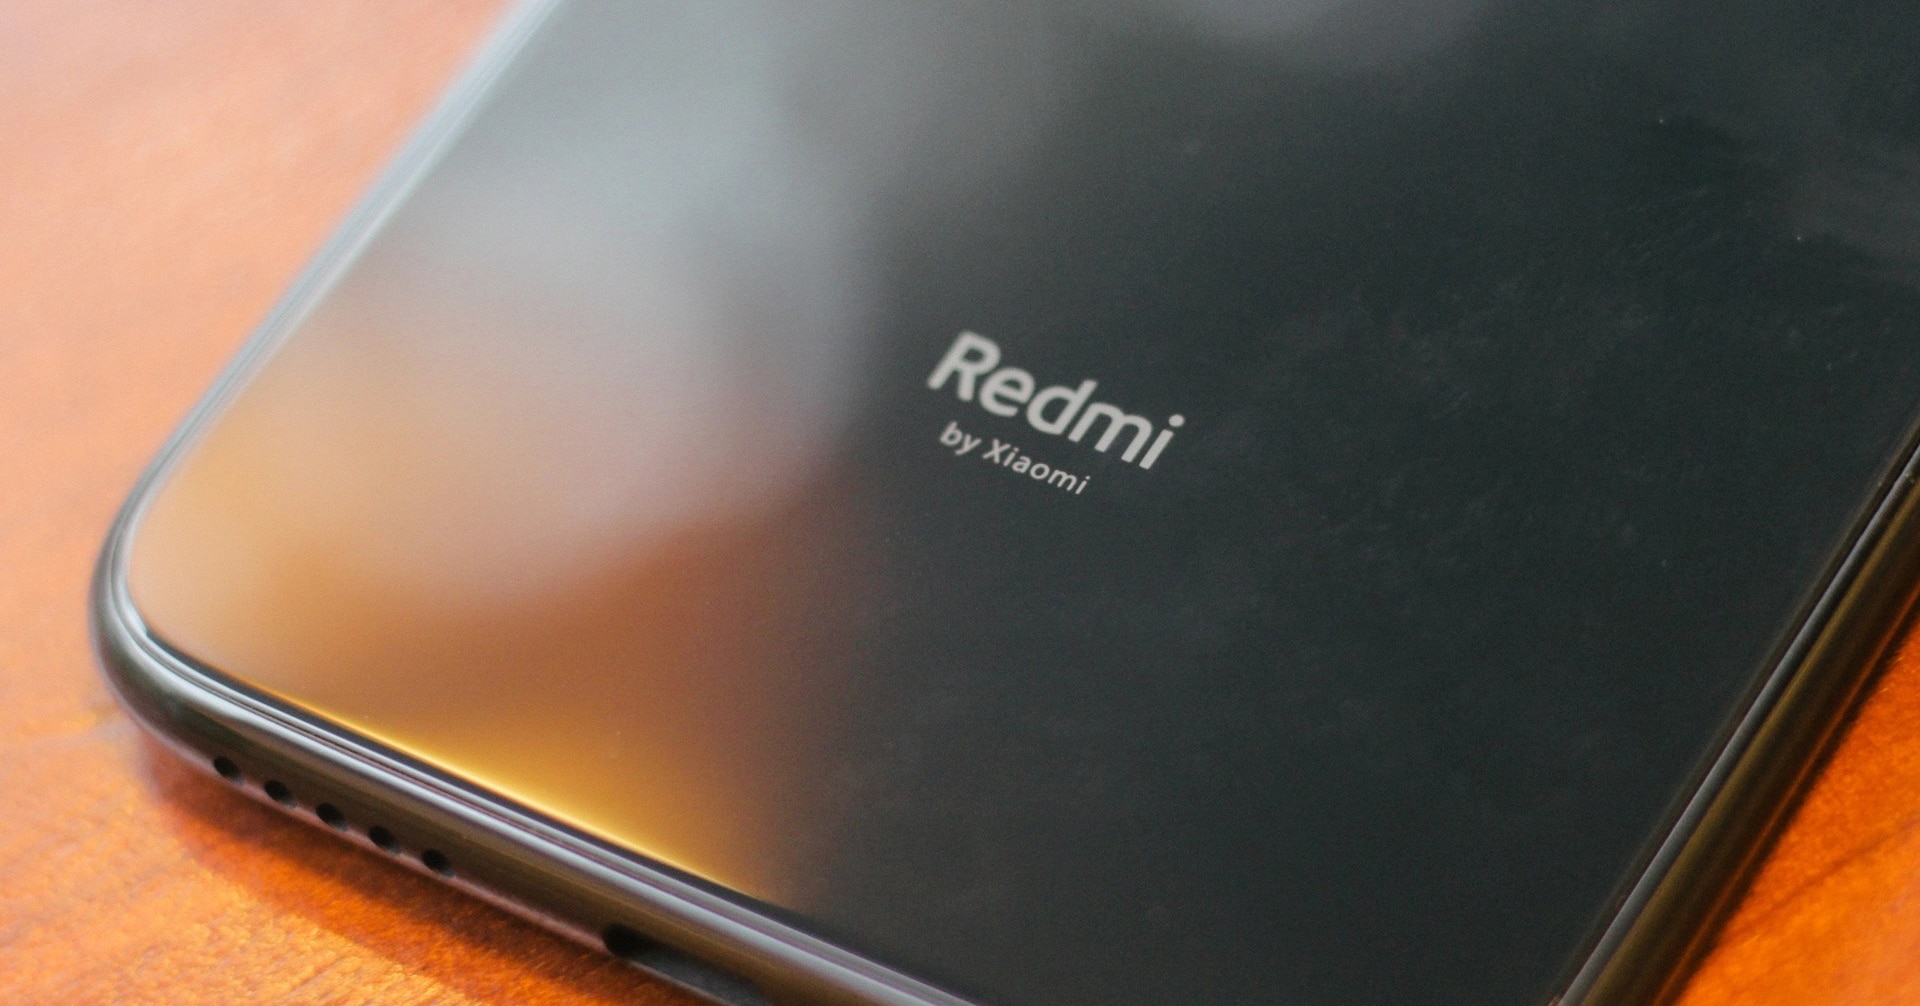 Redmi Phone By Xiaomi